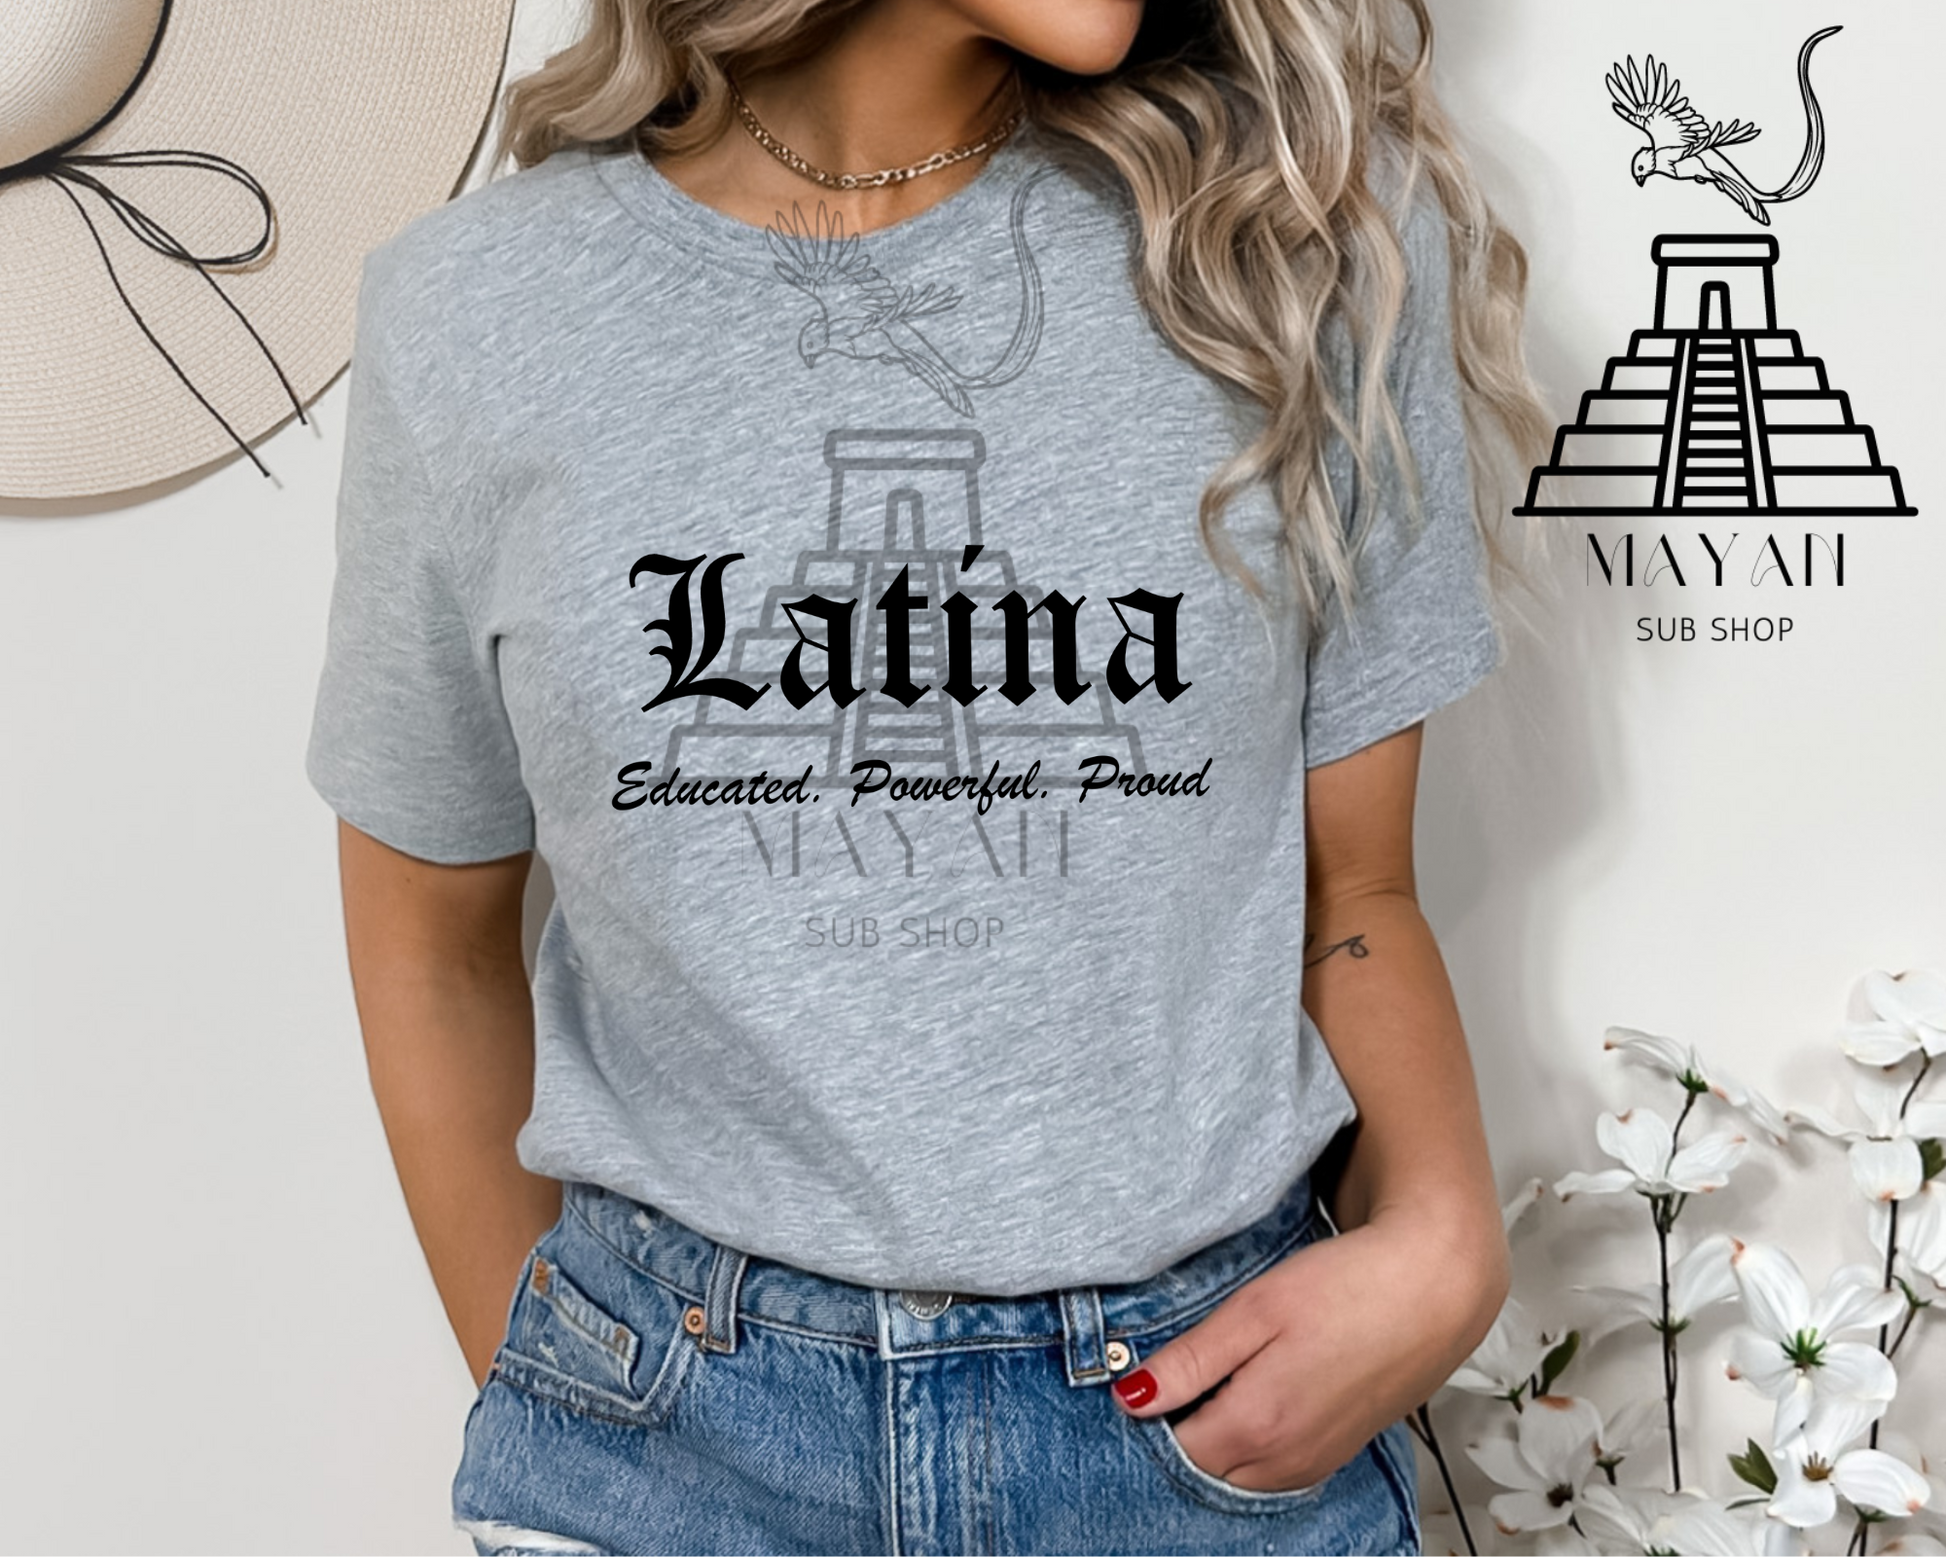 Latina shirt - Mayan Sub Shop